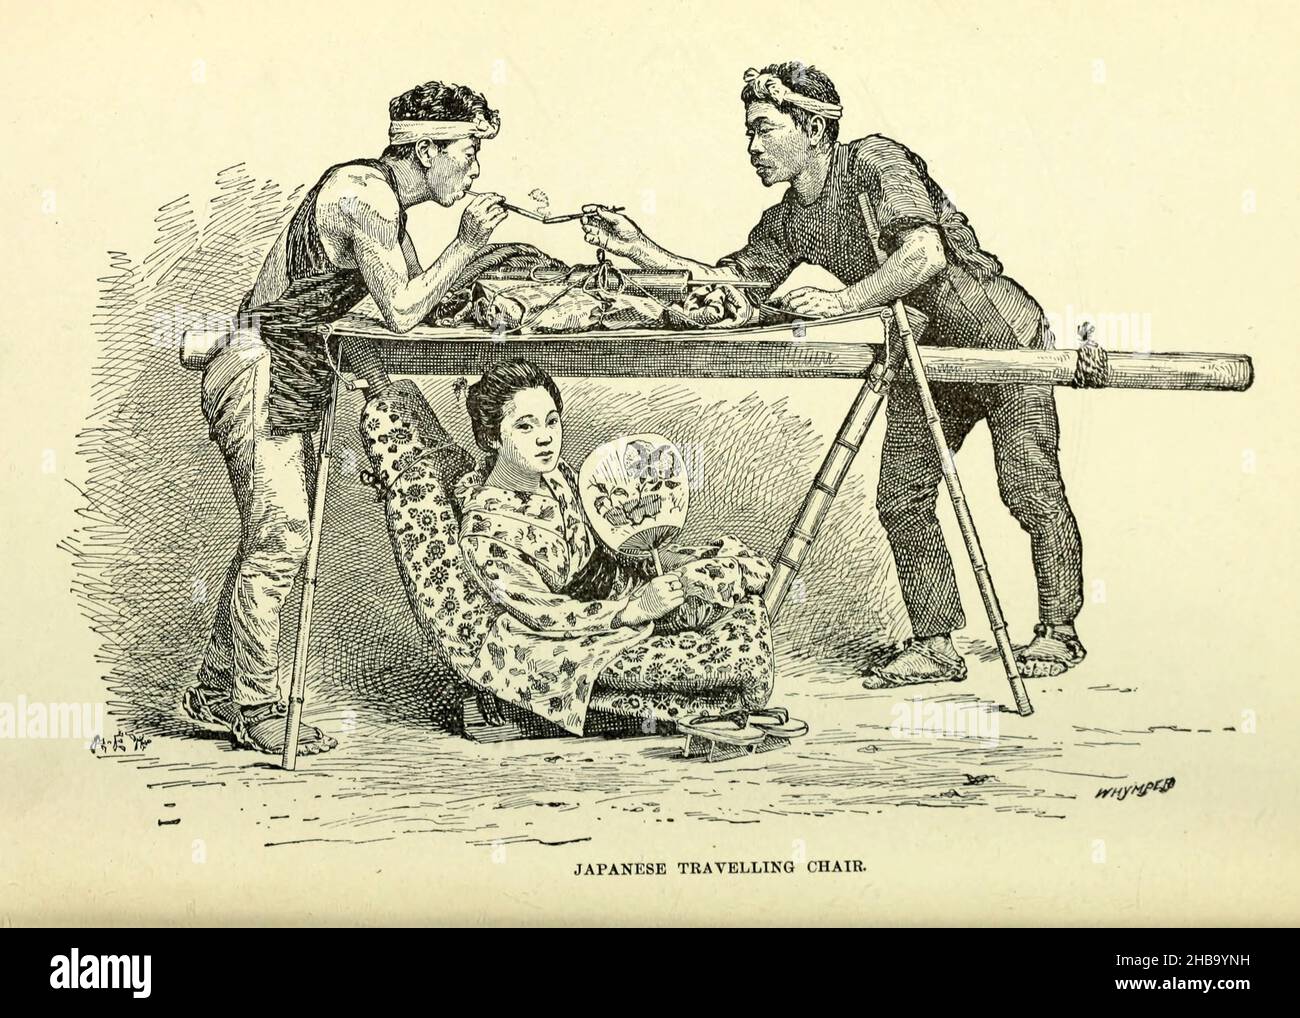 Illustrazione di una sedia da viaggio giapponese dal libro 'Rambles in Japan: The Land of the Rising Sun' di Henry Baker Tristrom (1822-1906). Data di pubblicazione 1895. Foto Stock